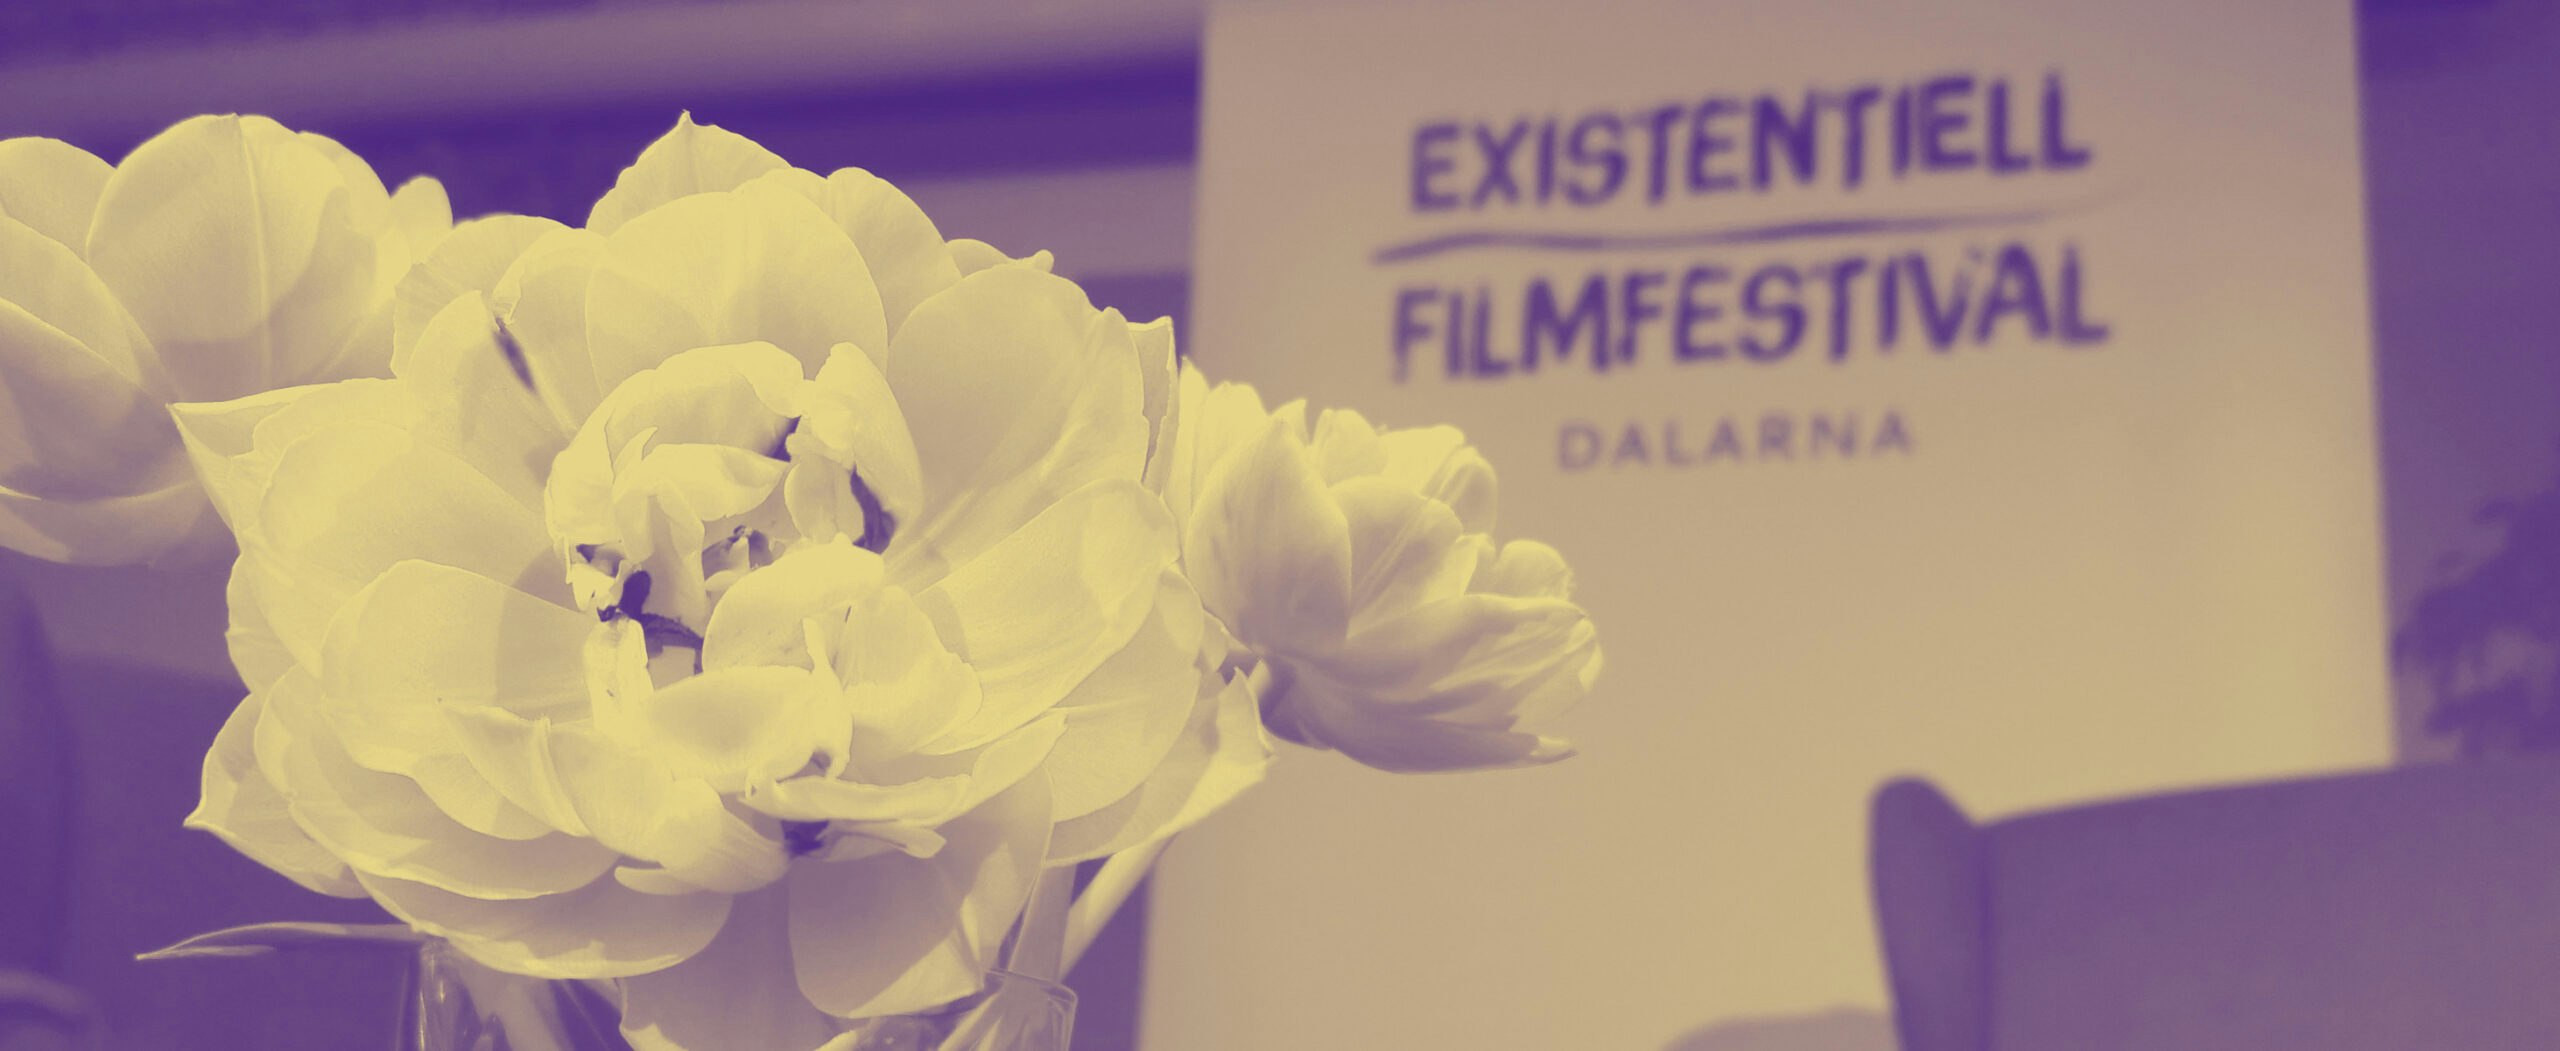 Blommor på Existentiell filmfestival Dalarna